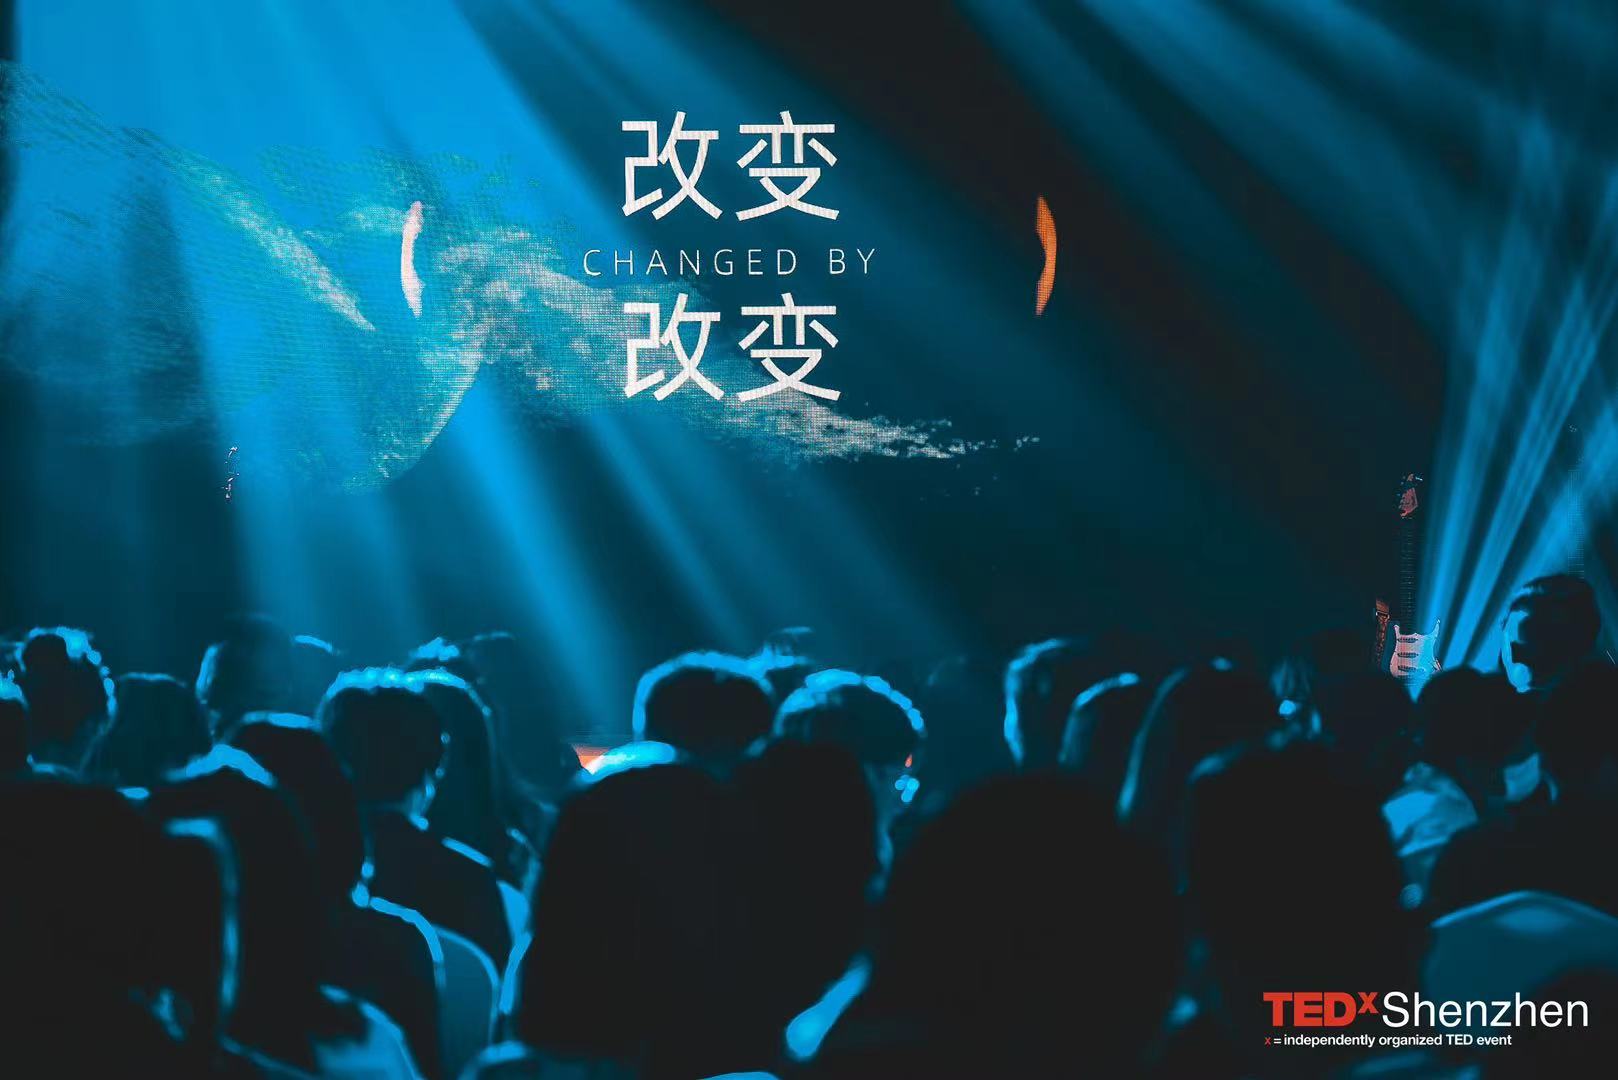 深圳来福士广场携手TEDxShenzhen,触发对“改变”的多角度思考